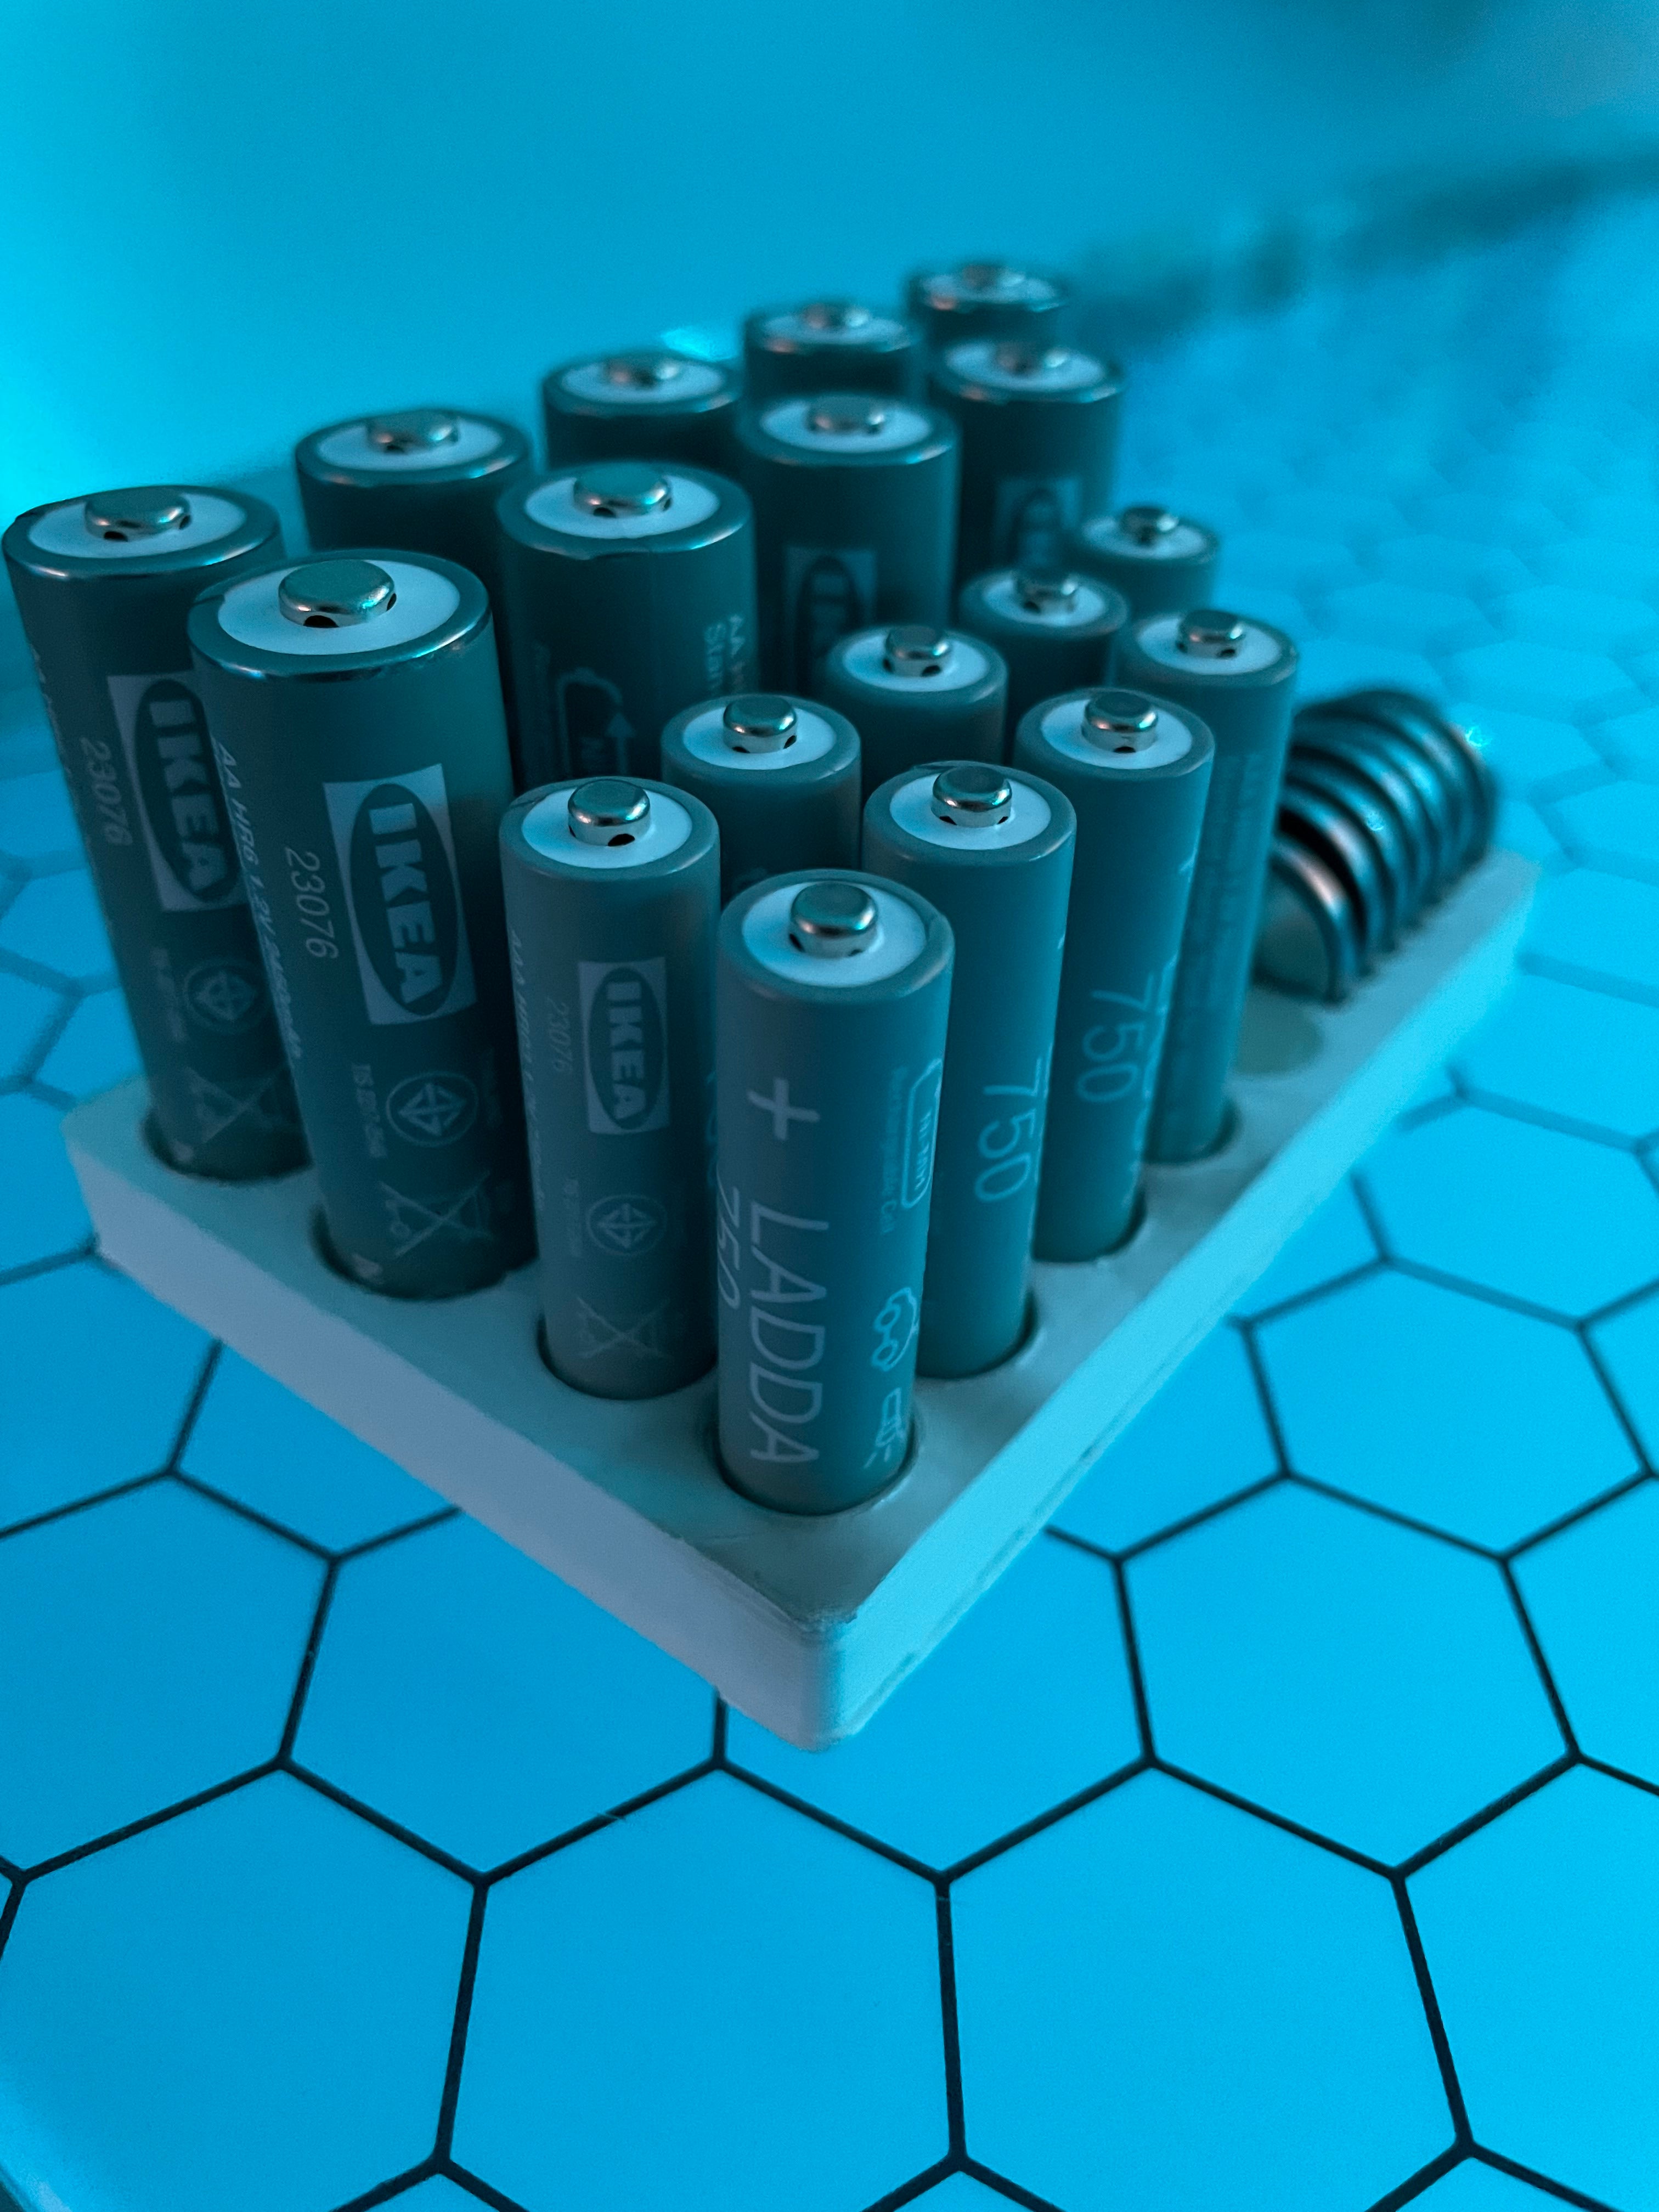 Βάση μπαταριών για μπαταρίες AA, AAA και CR2032 (ταιριάζει στο IKEA Ladda)